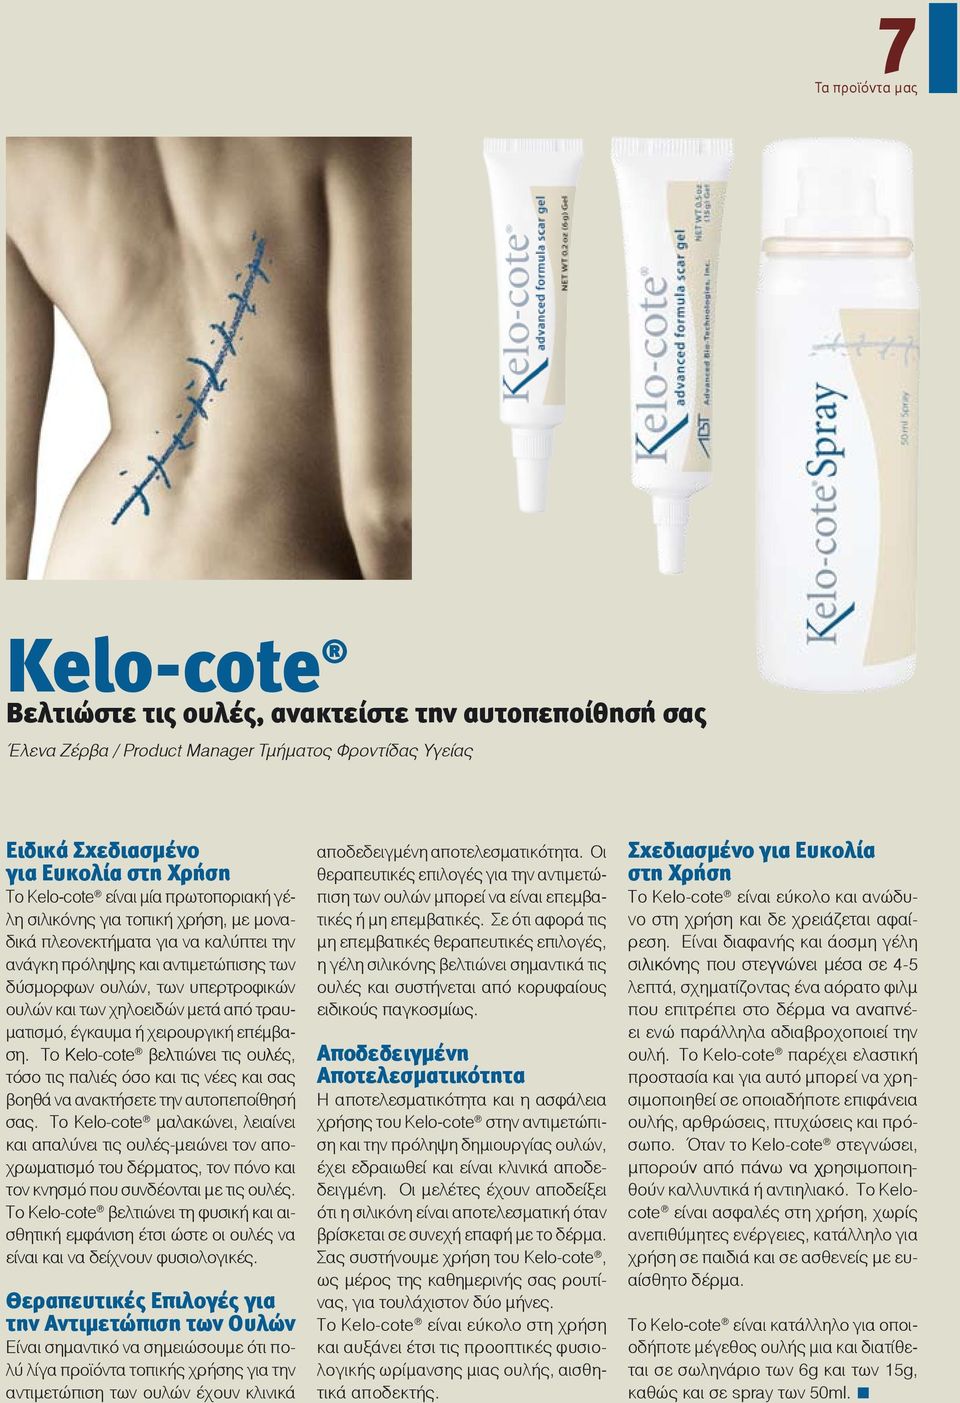 τραυματισμό, έγκαυμα ή χειρουργική επέμβαση. Το Kelo-cote βελτιώνει τις ουλές, τόσο τις παλιές όσο και τις νέες και σας βοηθά να ανακτήσετε την αυτοπεποίθησή σας.